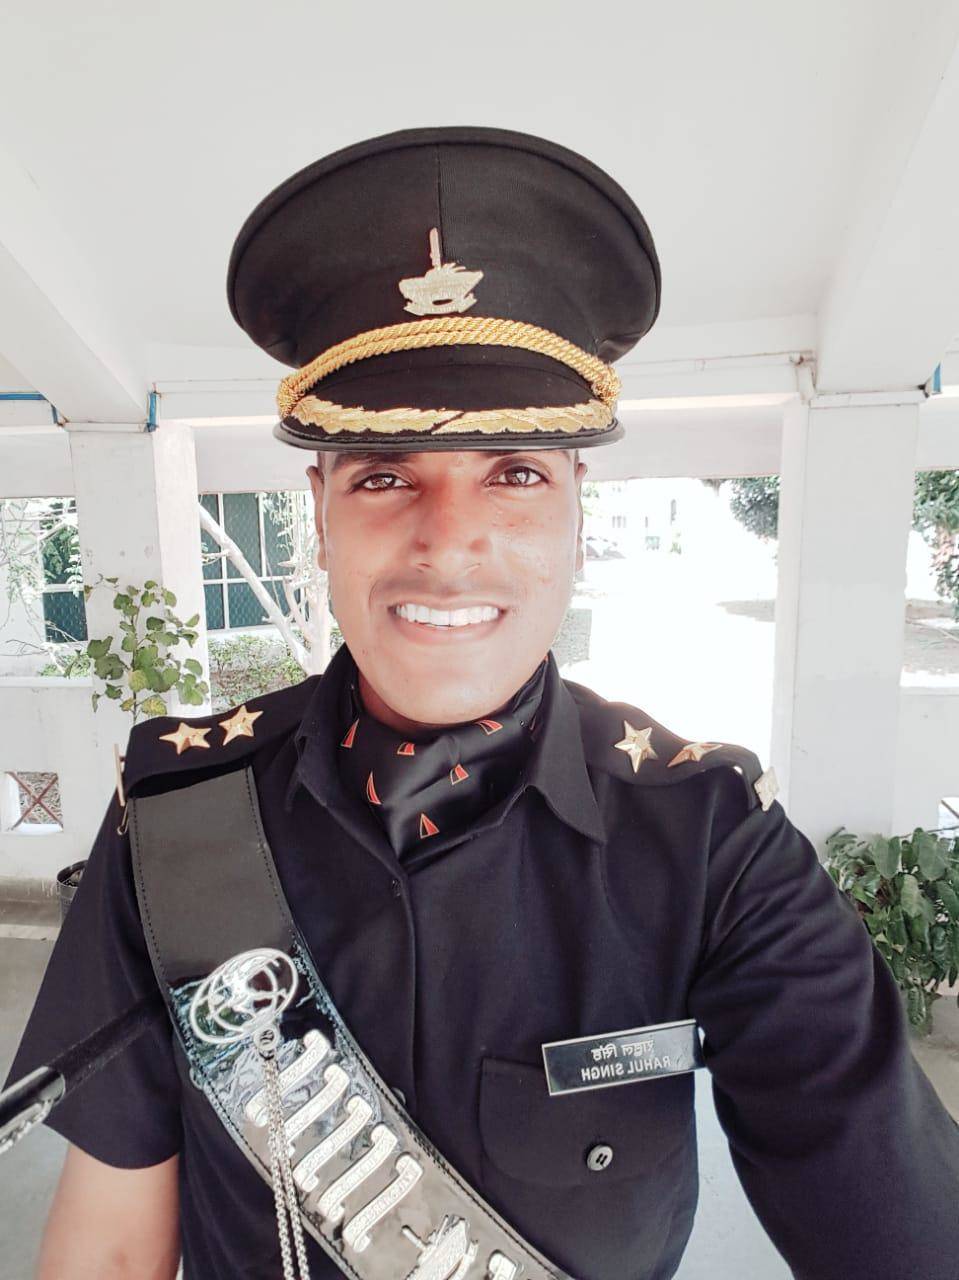 राहुल सिंह बने आर्मी में लेफ्टिनेंट, गांव में खुशी का माहौल, देखे तस्वीरें